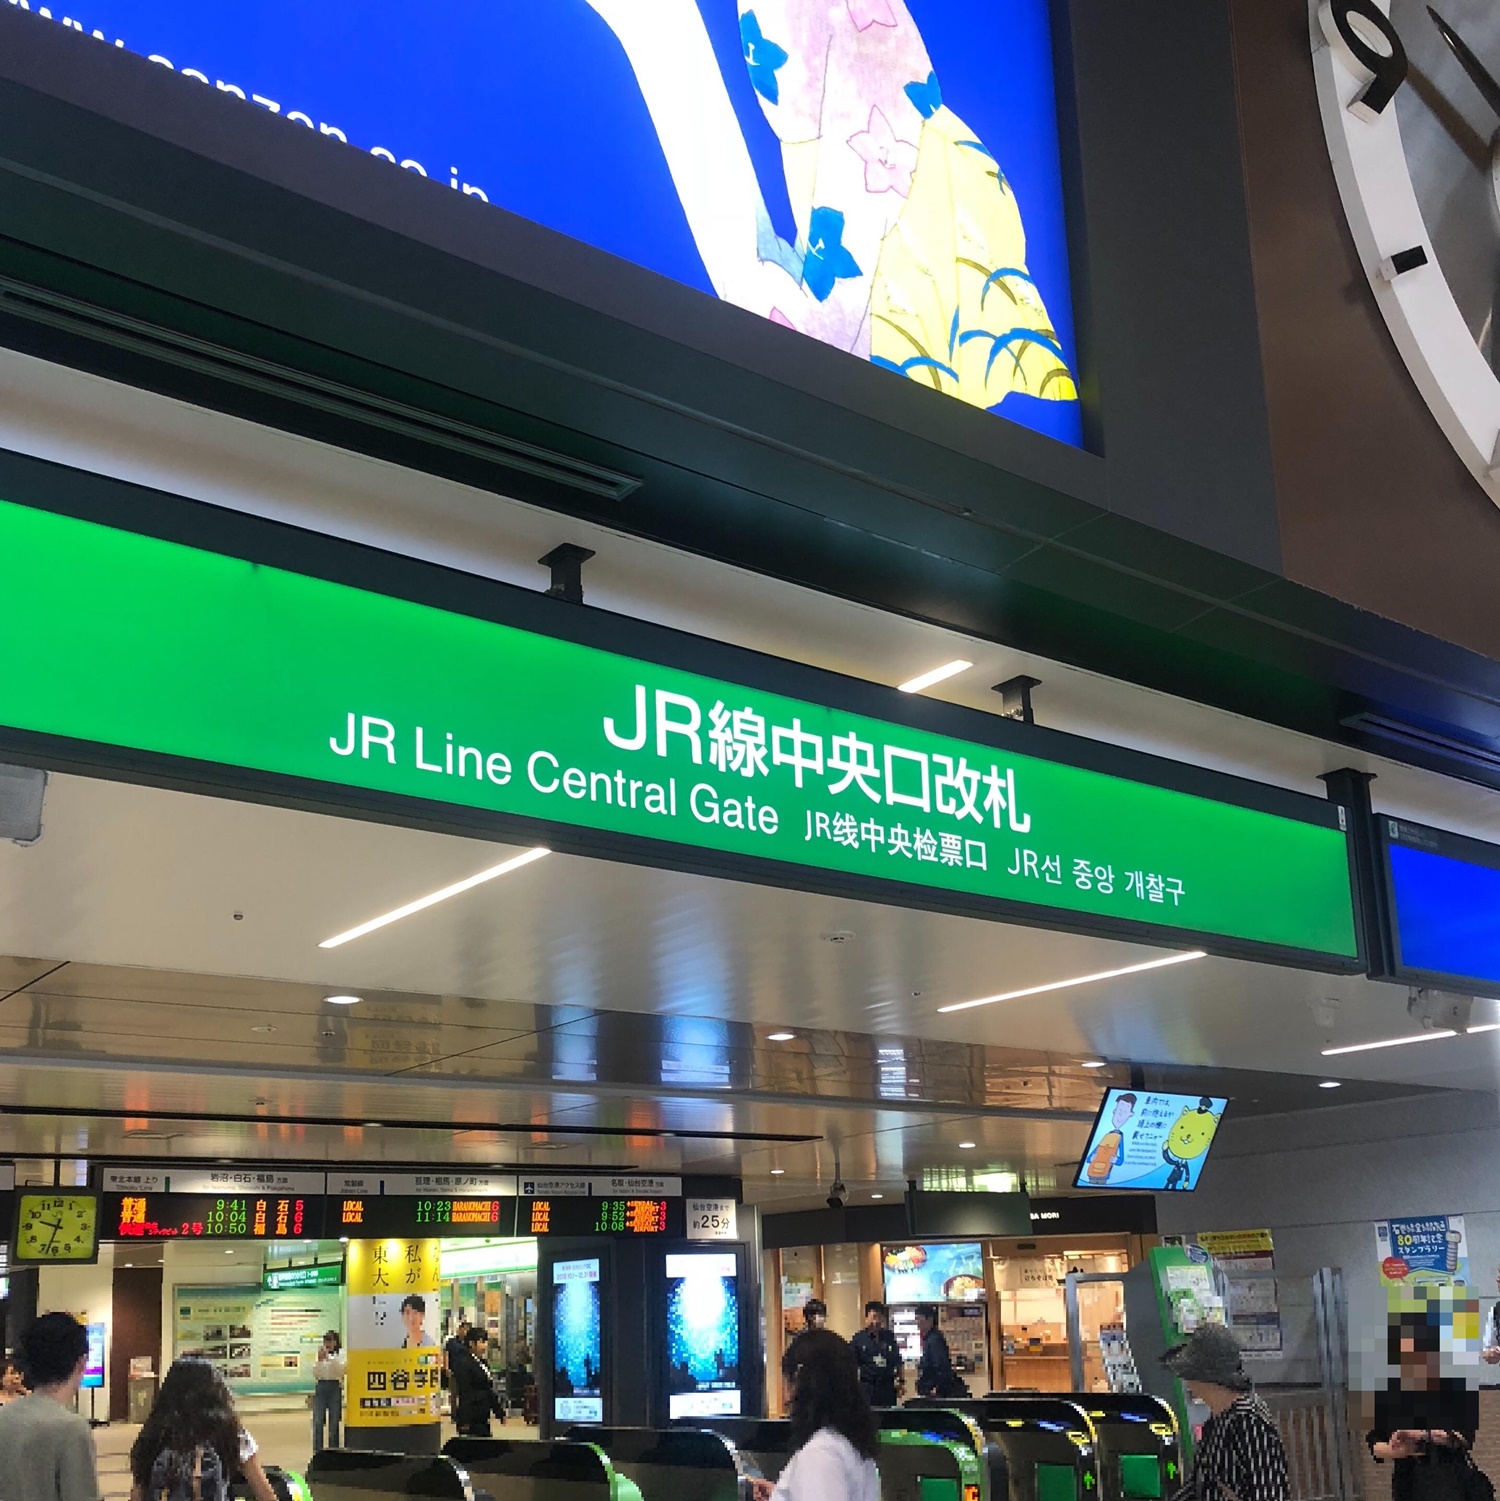 1.仙台駅JR線中央改札口をでます。